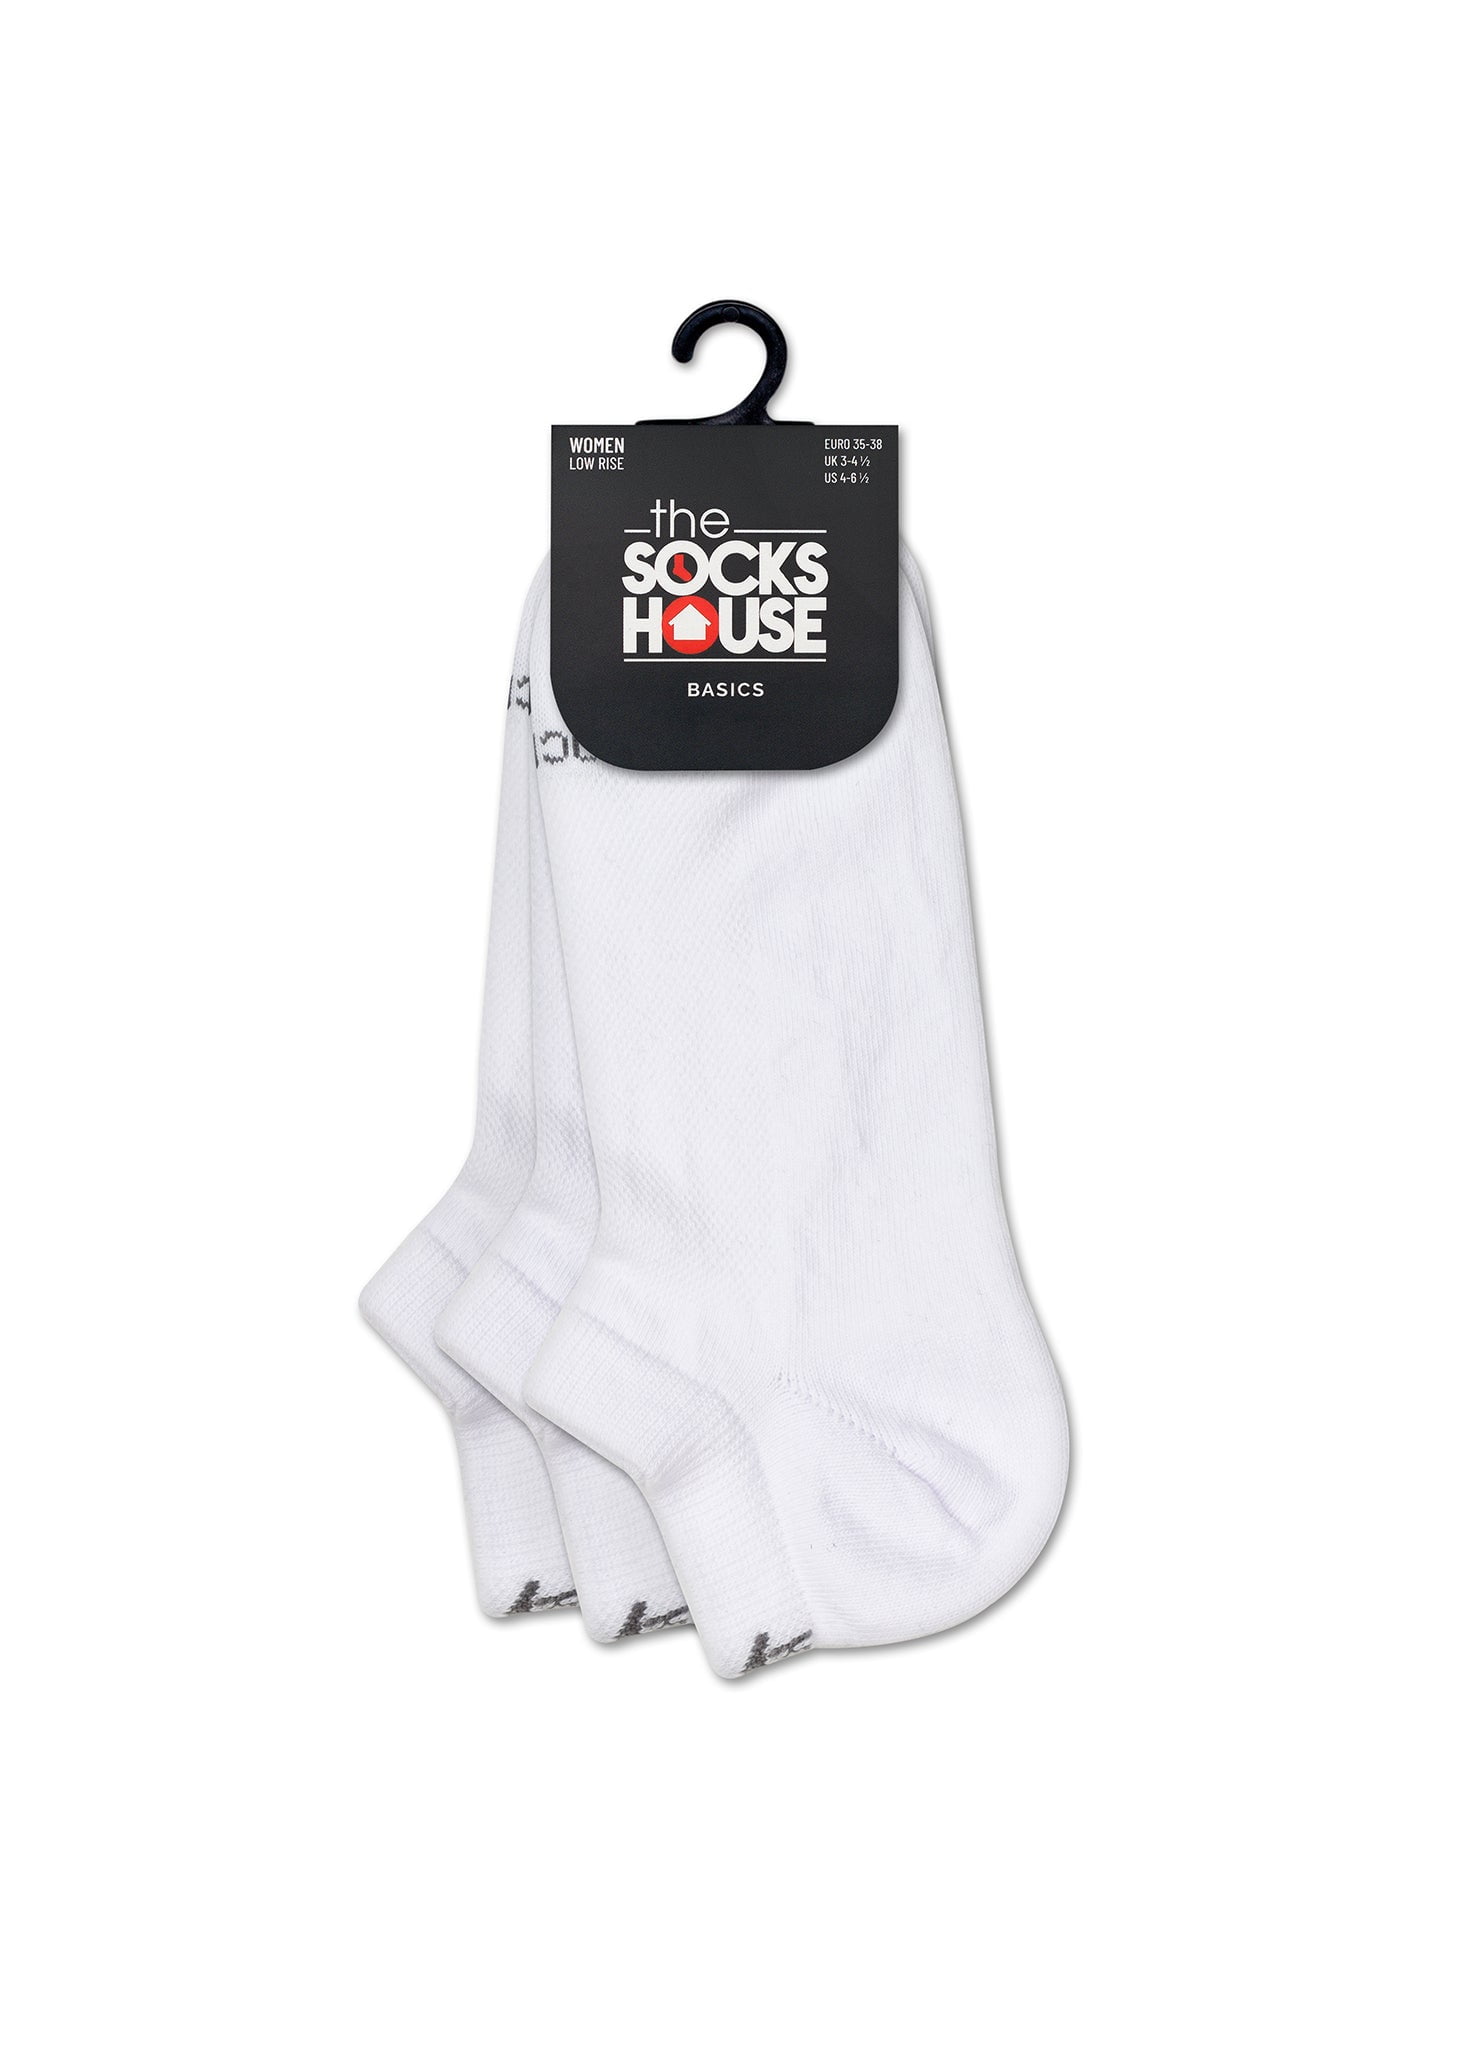 Basic White Trainer Socks with 3 Pairs - Walmart.com